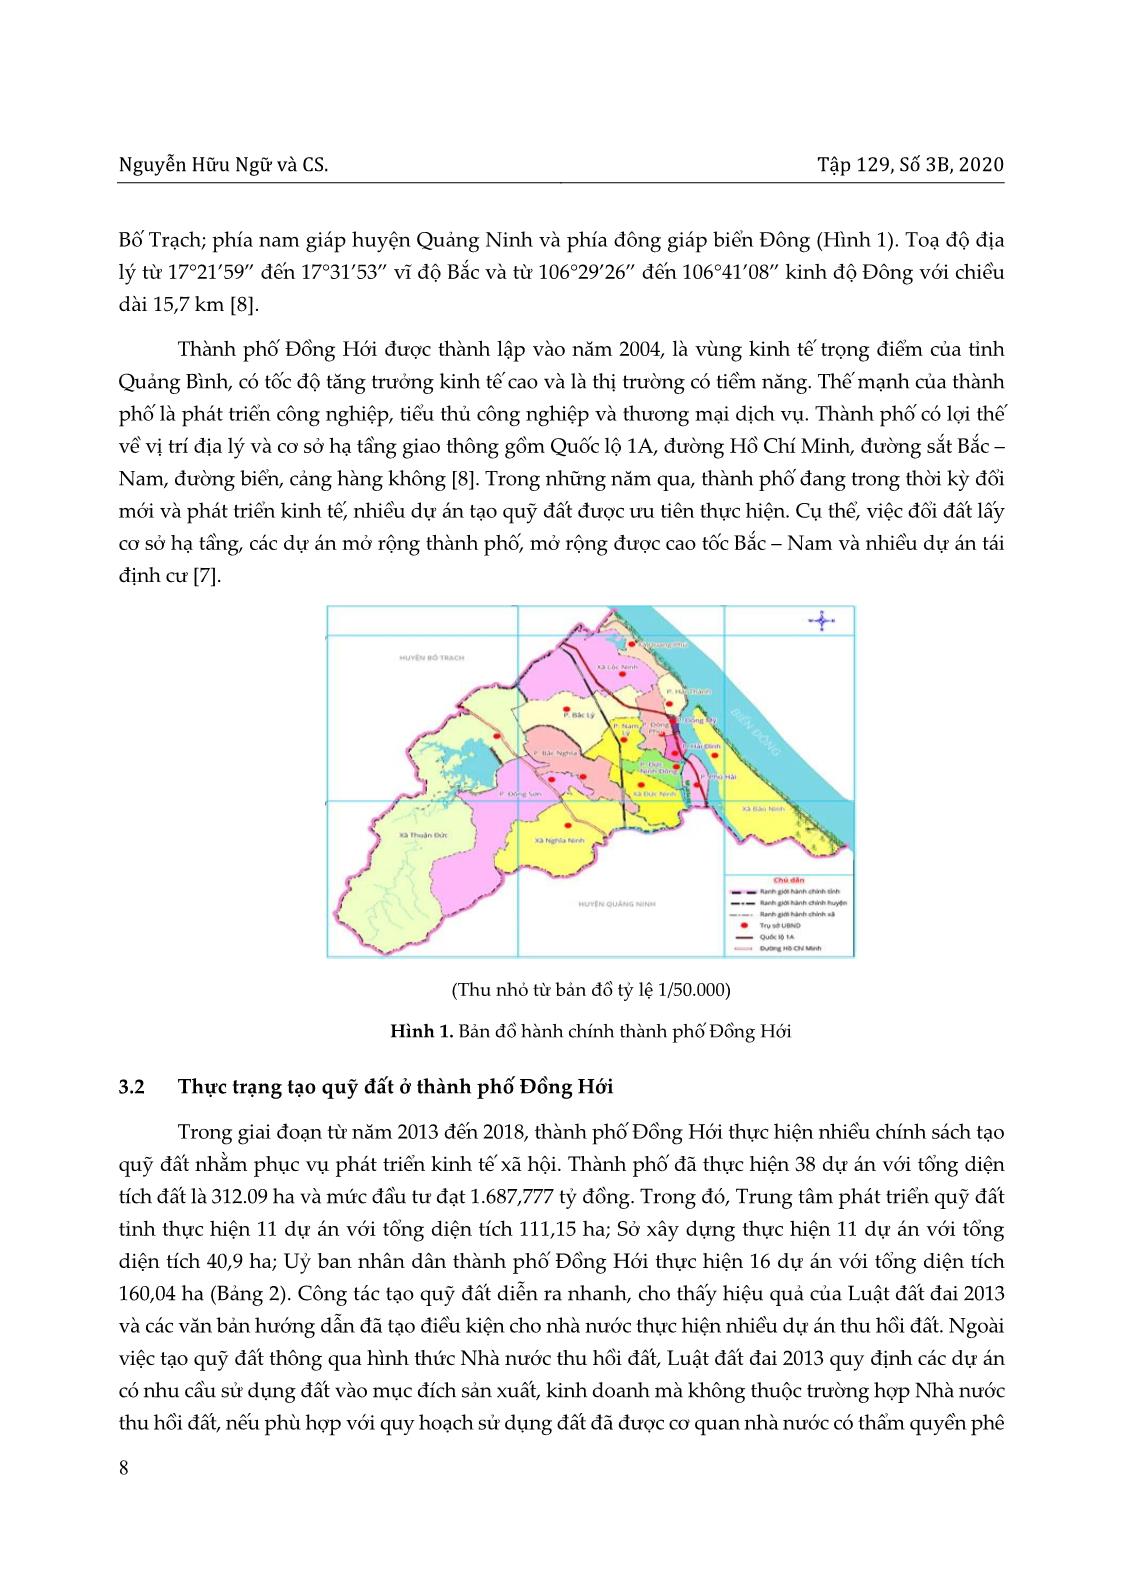 Các yếu tố ảnh hưởng đến việc tạo quỹ đất phục vụ phát triển kinh tế - xã hội ở thành phố Đồng Hới, tỉnh Quảng Bình trang 4